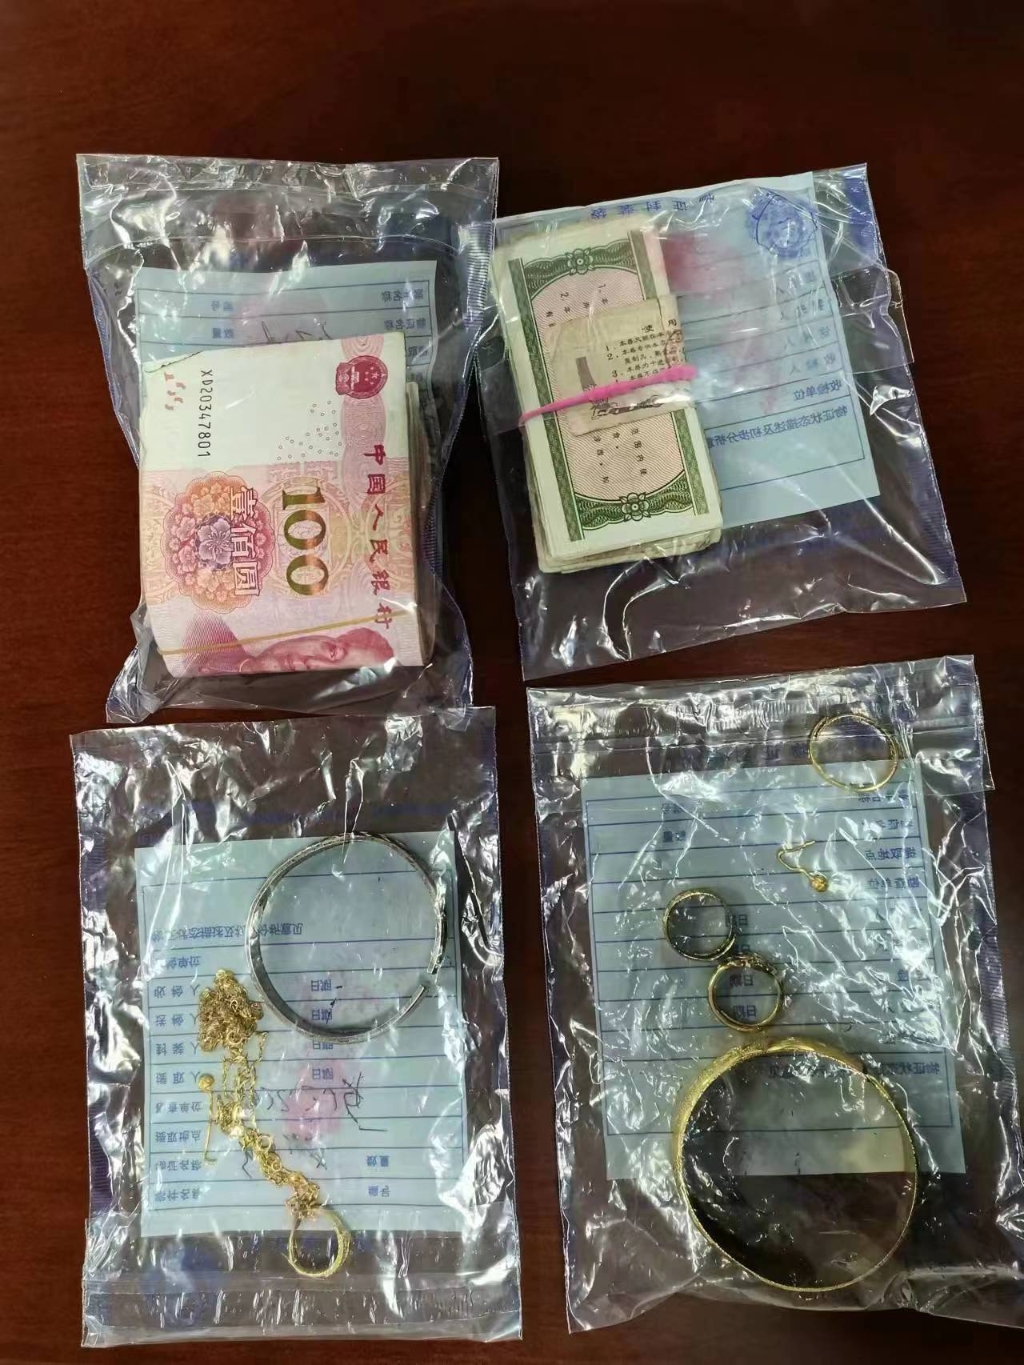 2大到金首饰，小到五毛钱、粮票，嫌疑人都不放过。重庆北碚警方供图